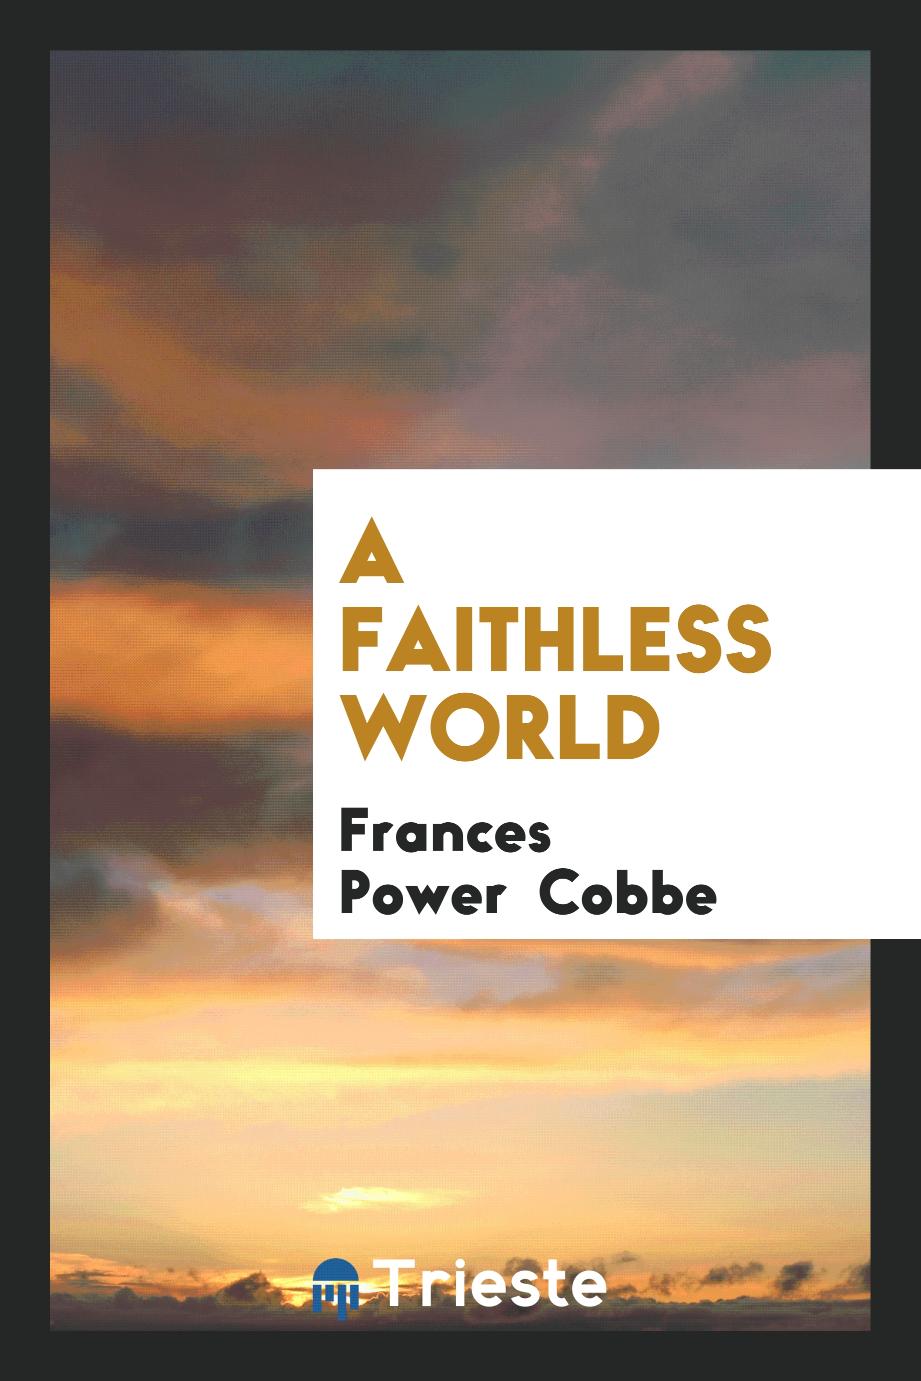 A faithless world